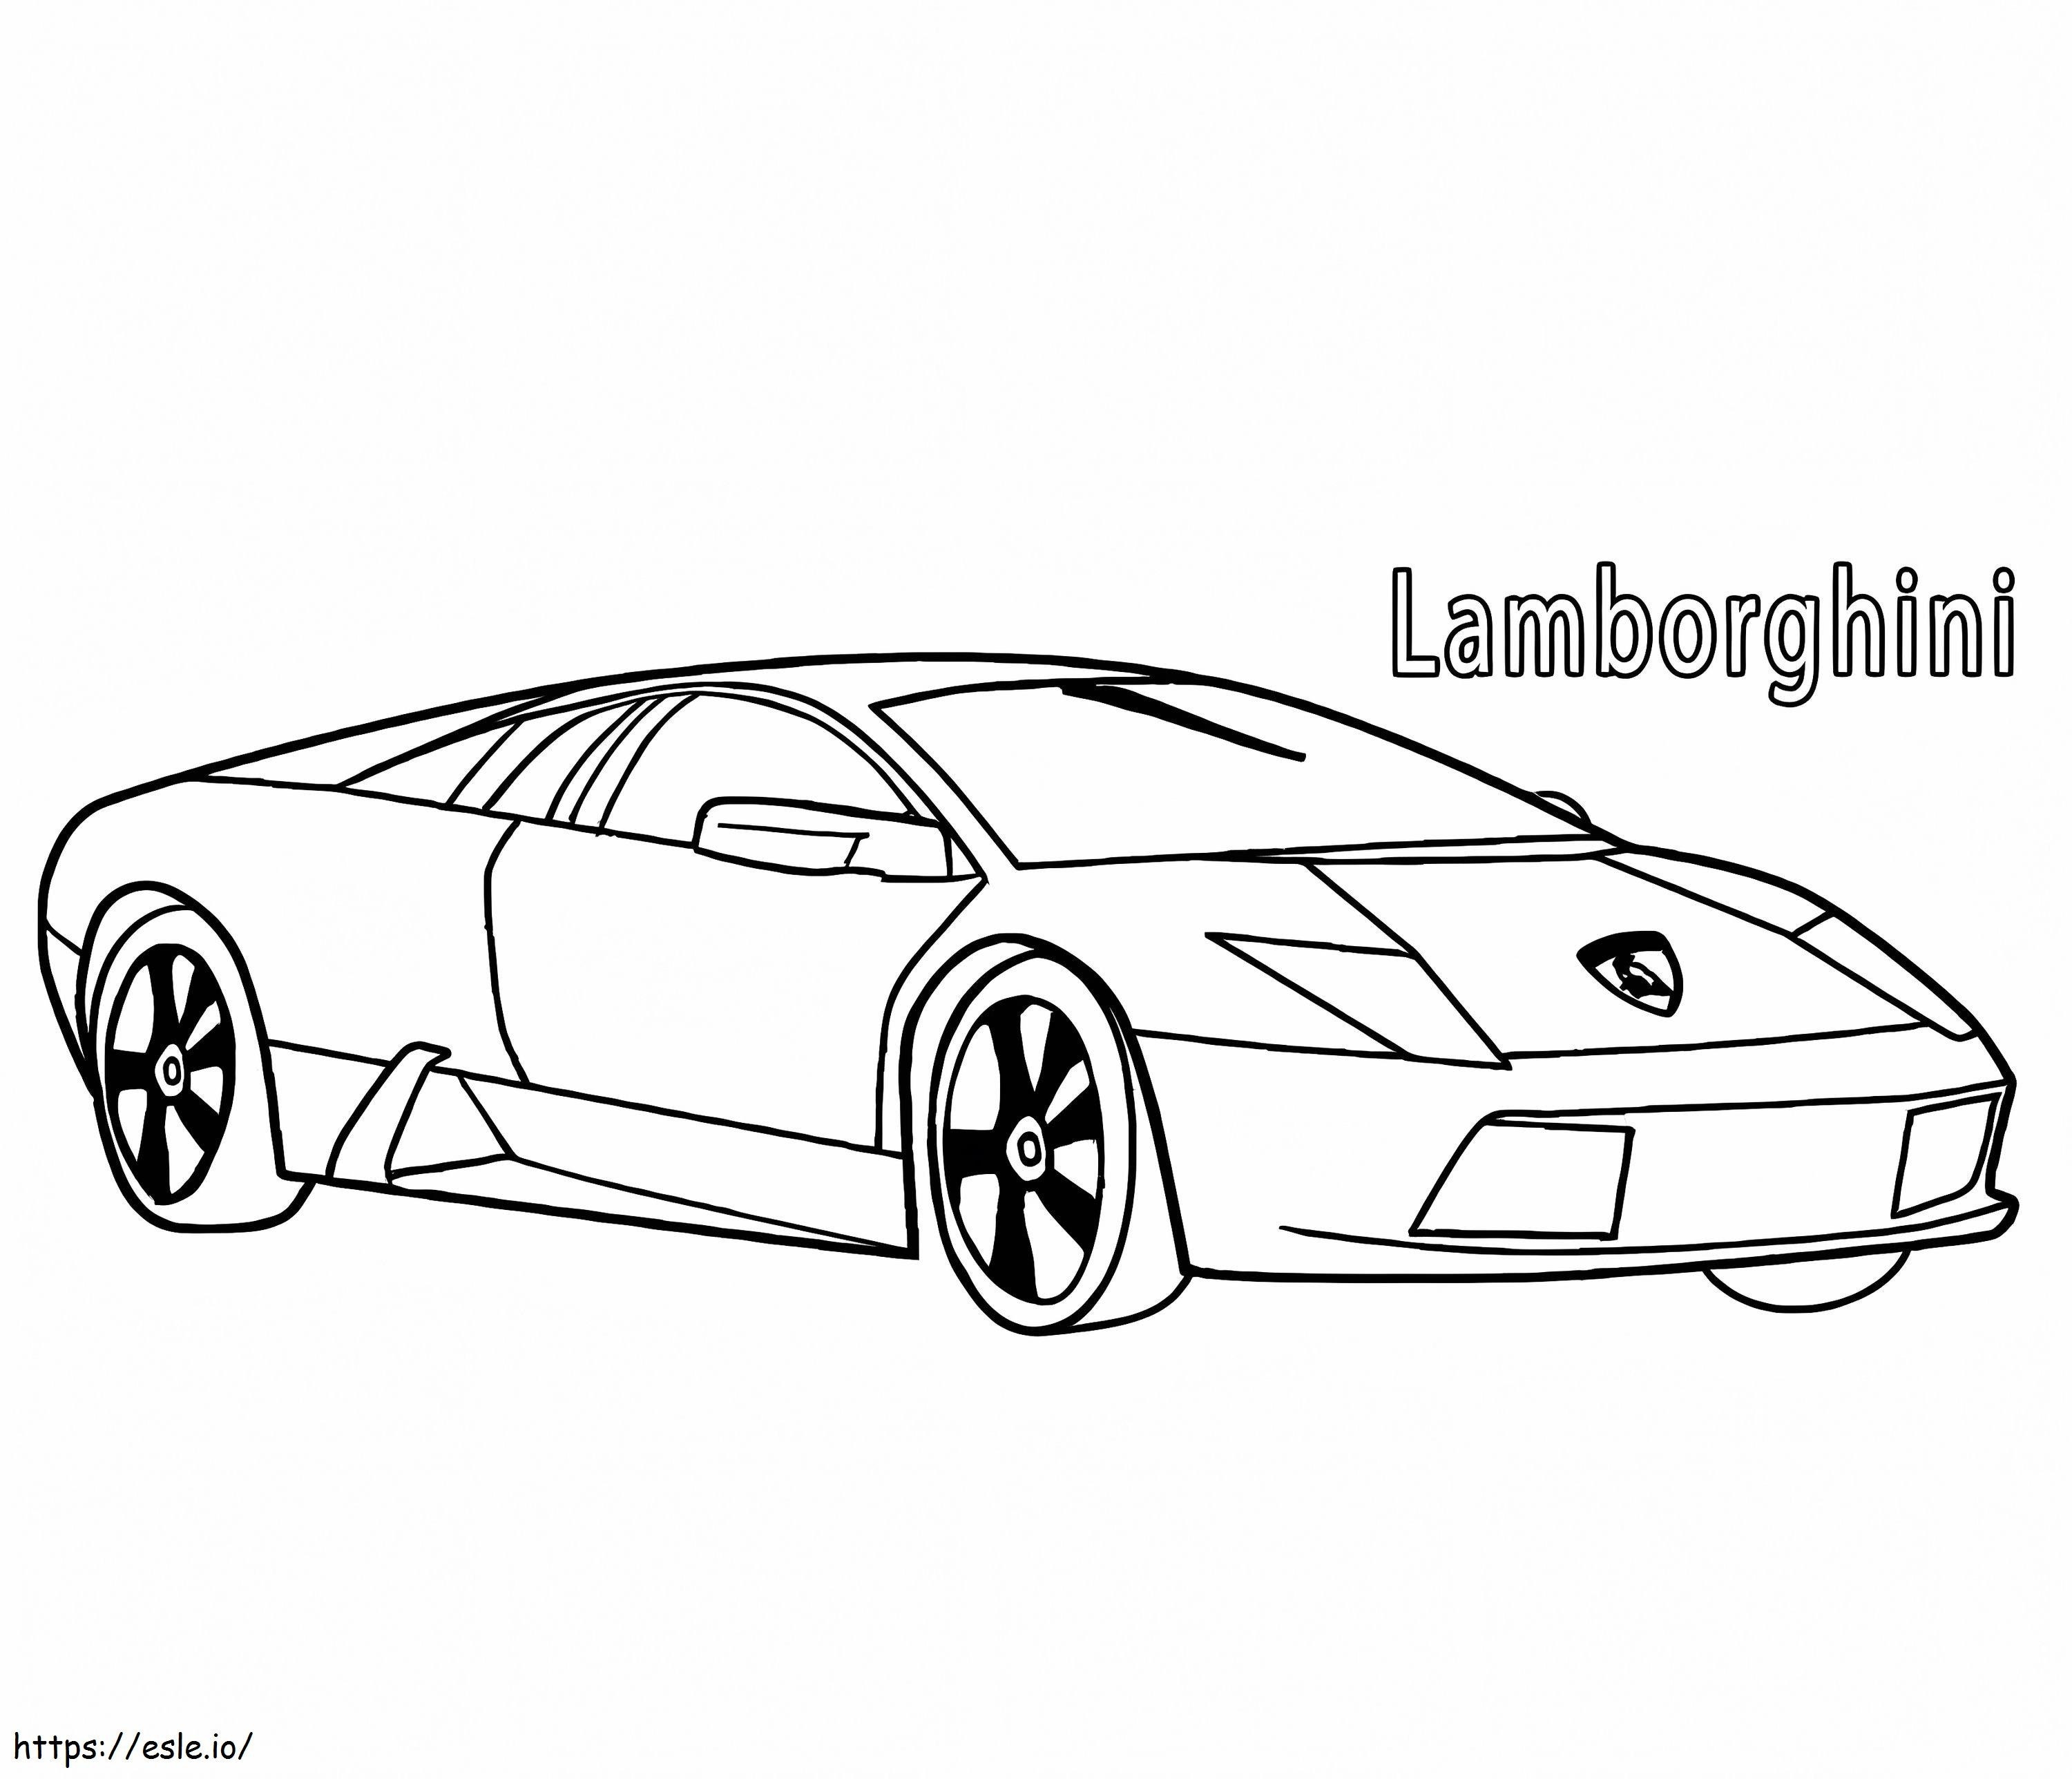 Lamborghini 3 coloring page